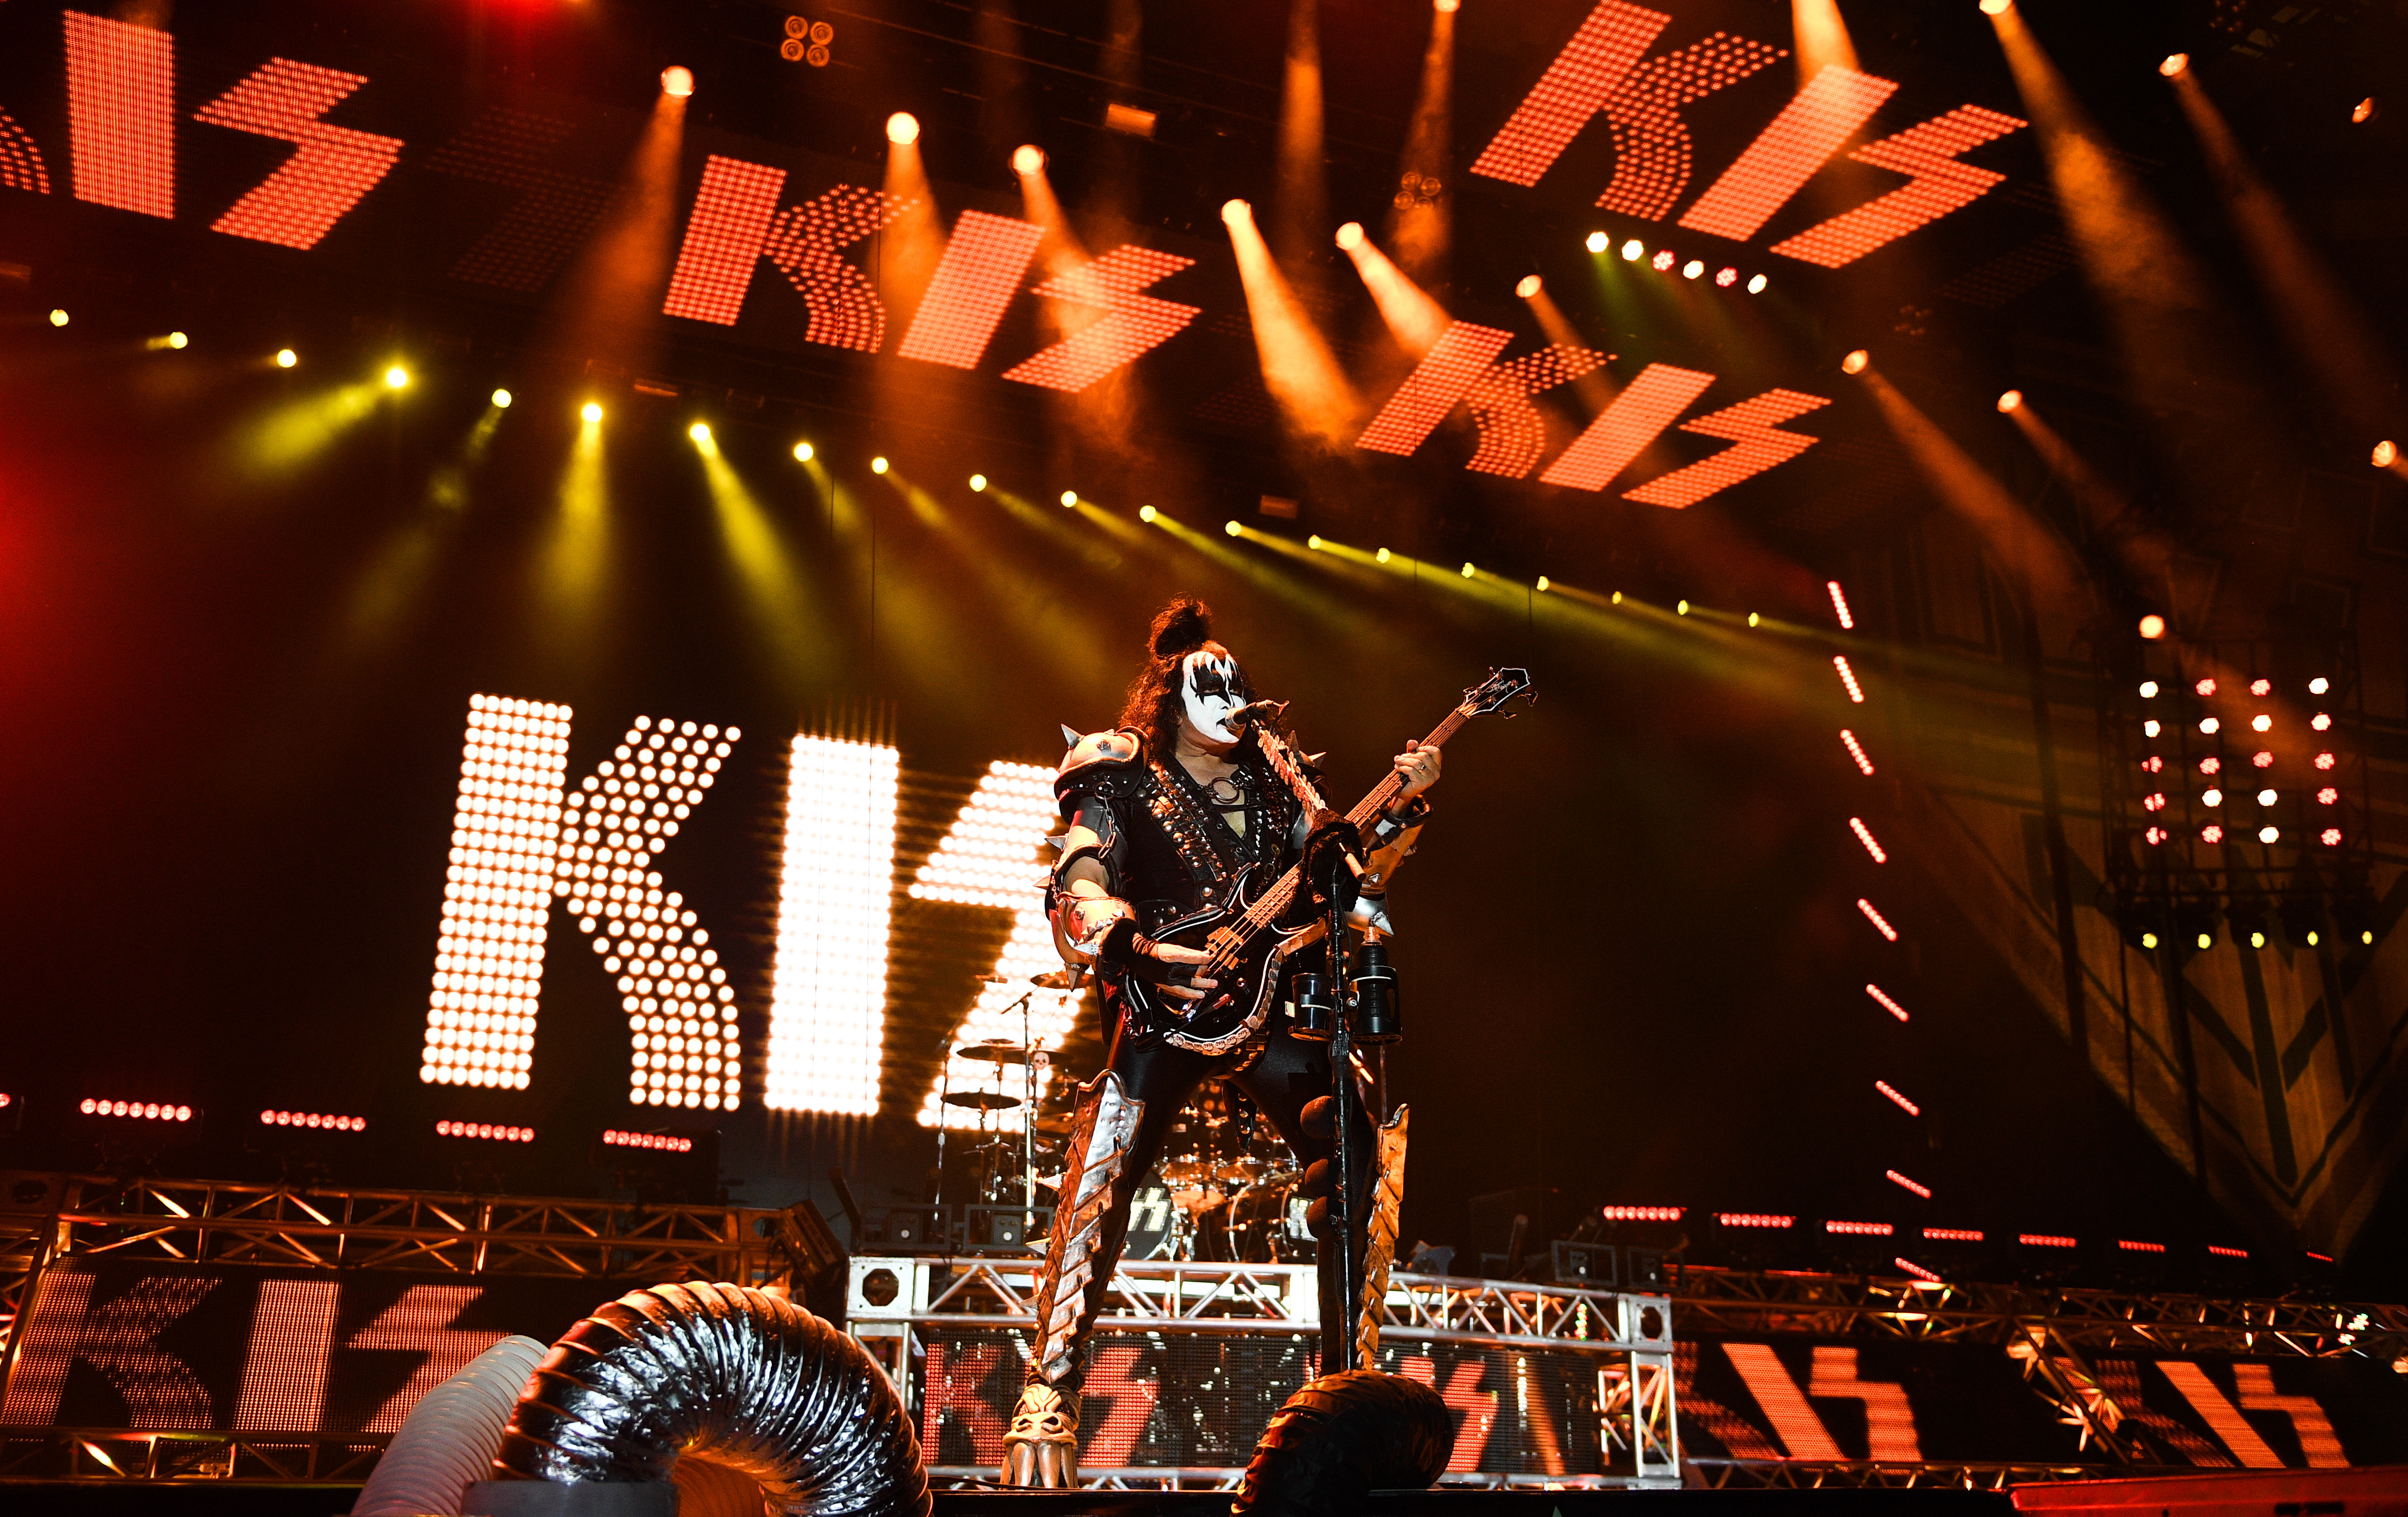 Музыкант группы Kiss Джин Симмонс выступает на концерте в СК "Олимпийский" в Москве. Фото: &copy; РИА Новости/Владимир Астапкович